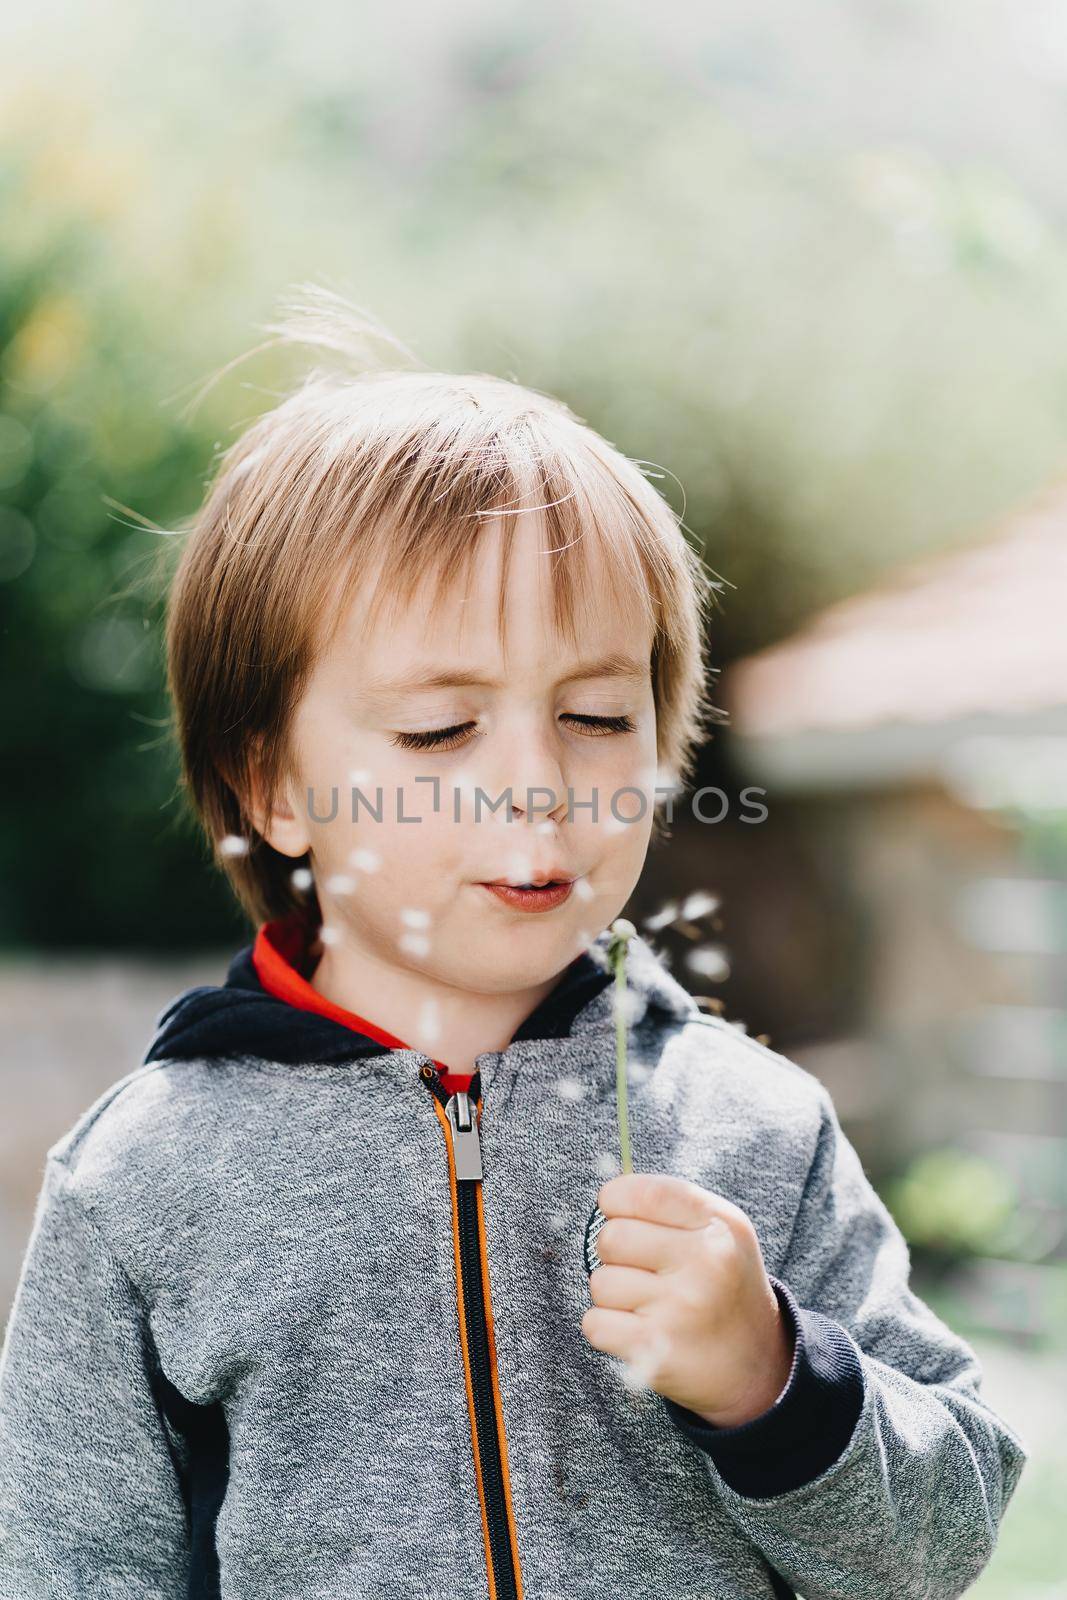 Little boy blows in dandelion on sunlight by Praximon